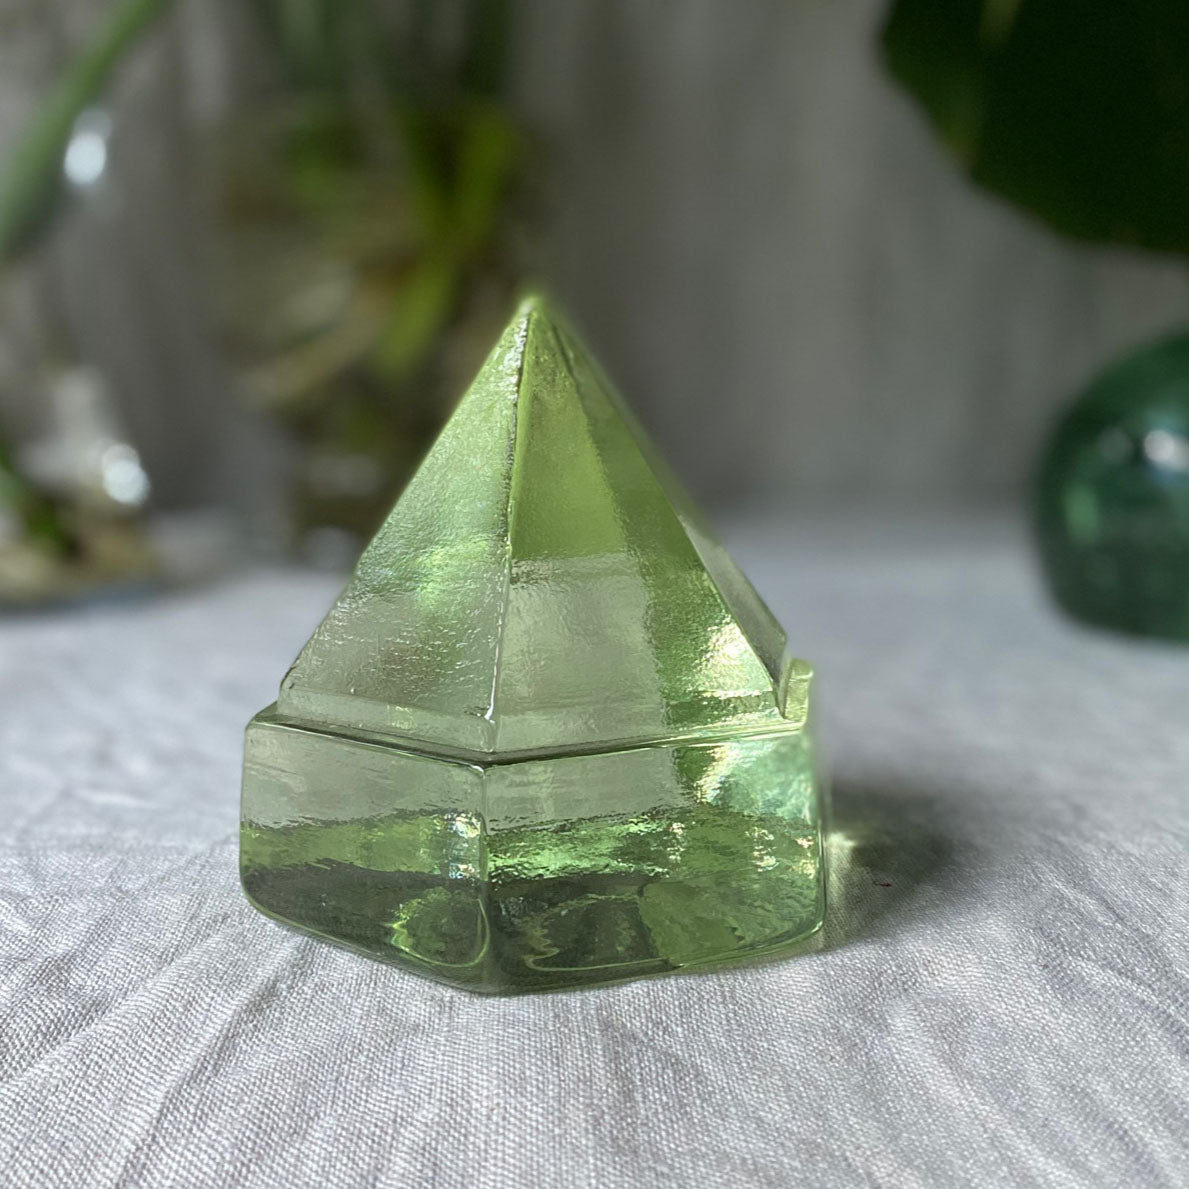 Hexagonal Prism Glass Paperweight